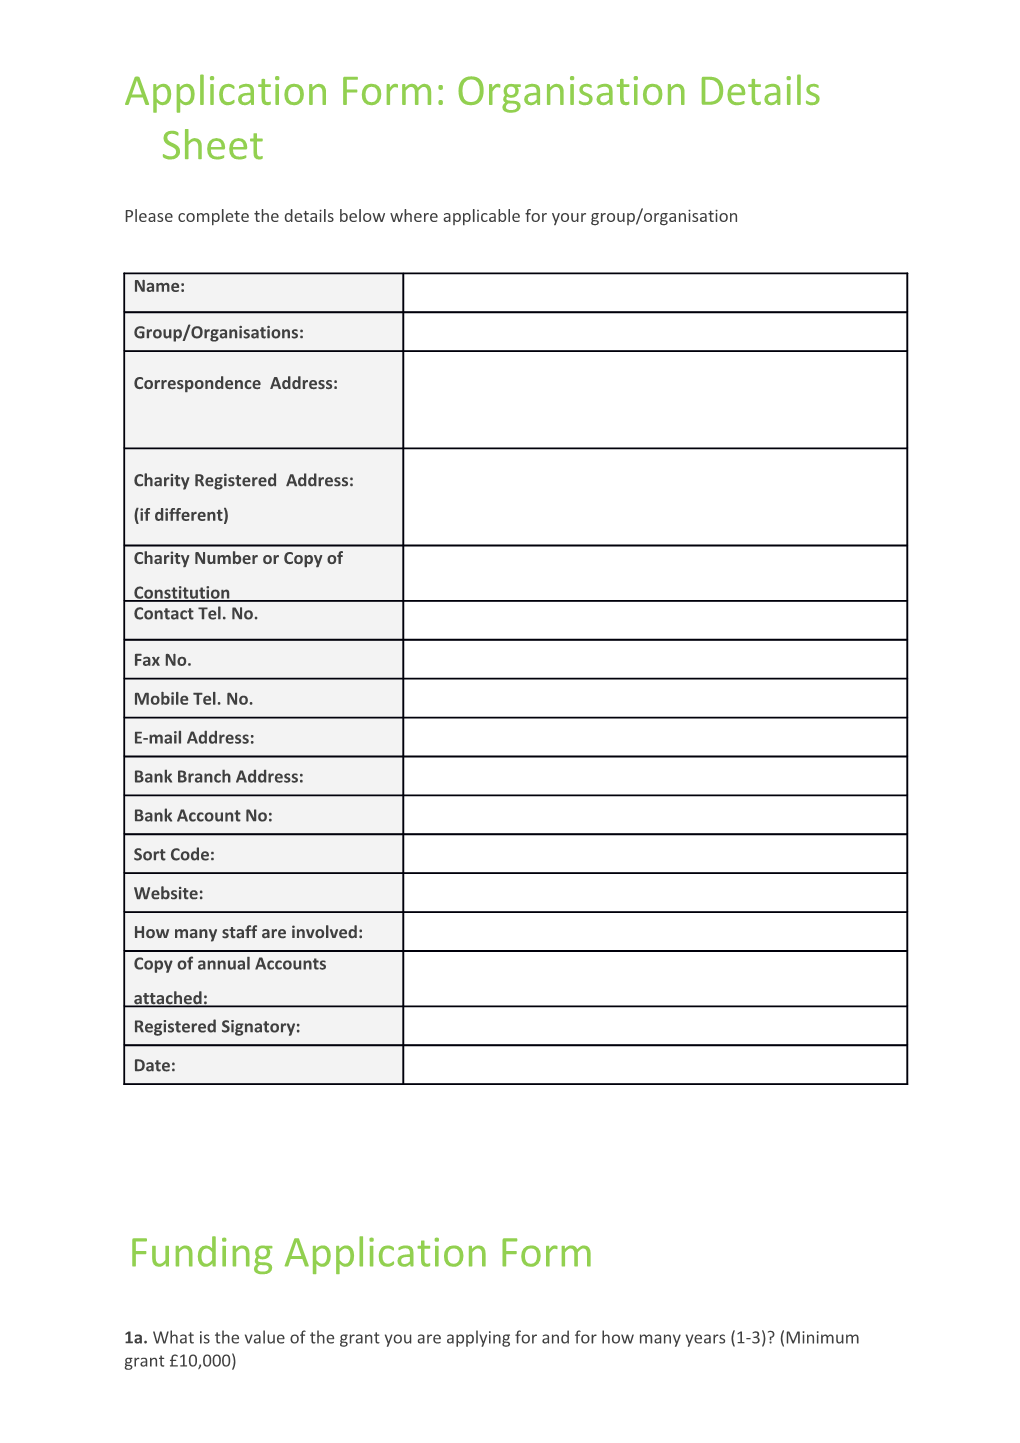 Application Form: Organisation Details Sheet